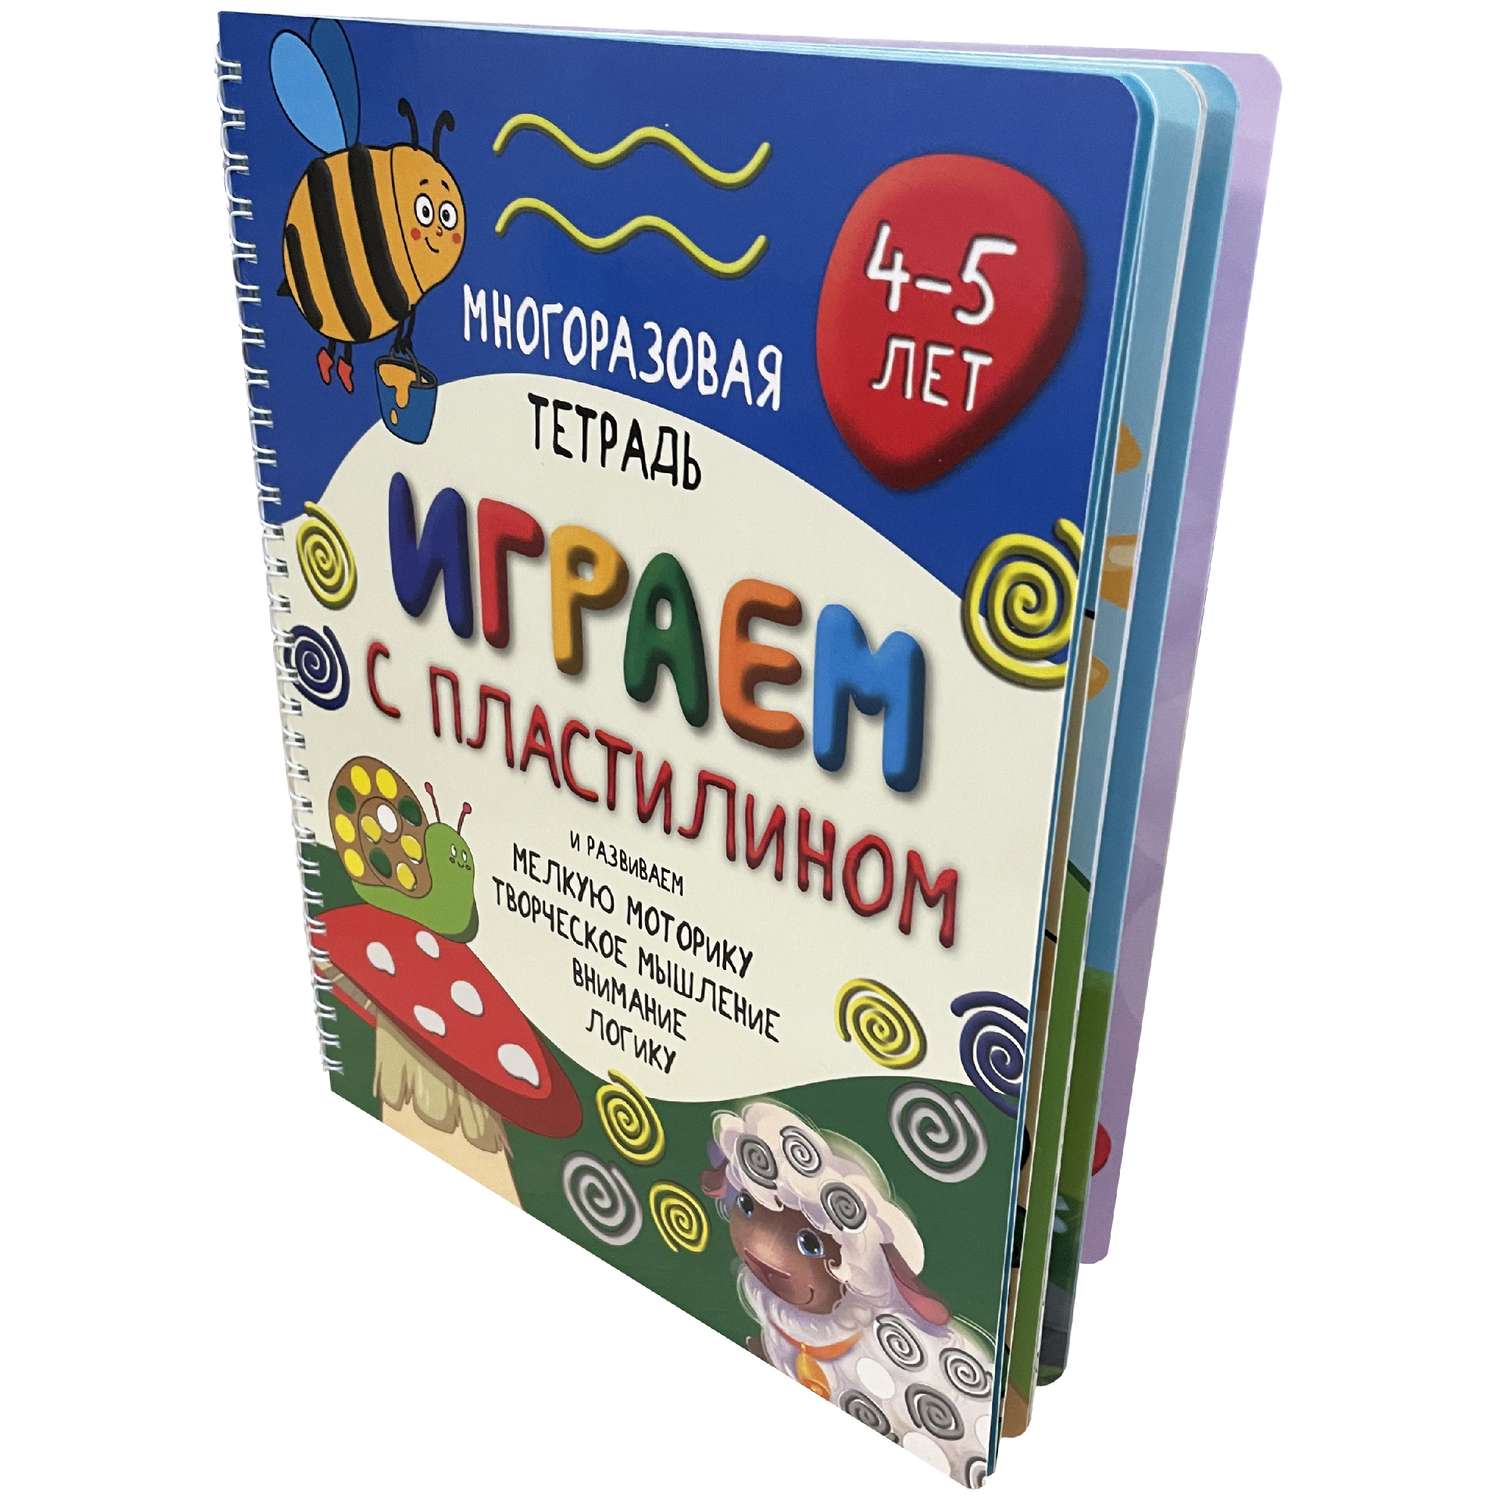 Книга BimBiMon Многоразовые тетради Пиши-Стирай для детей 4-5 лет и Играем с пластилином - фото 7